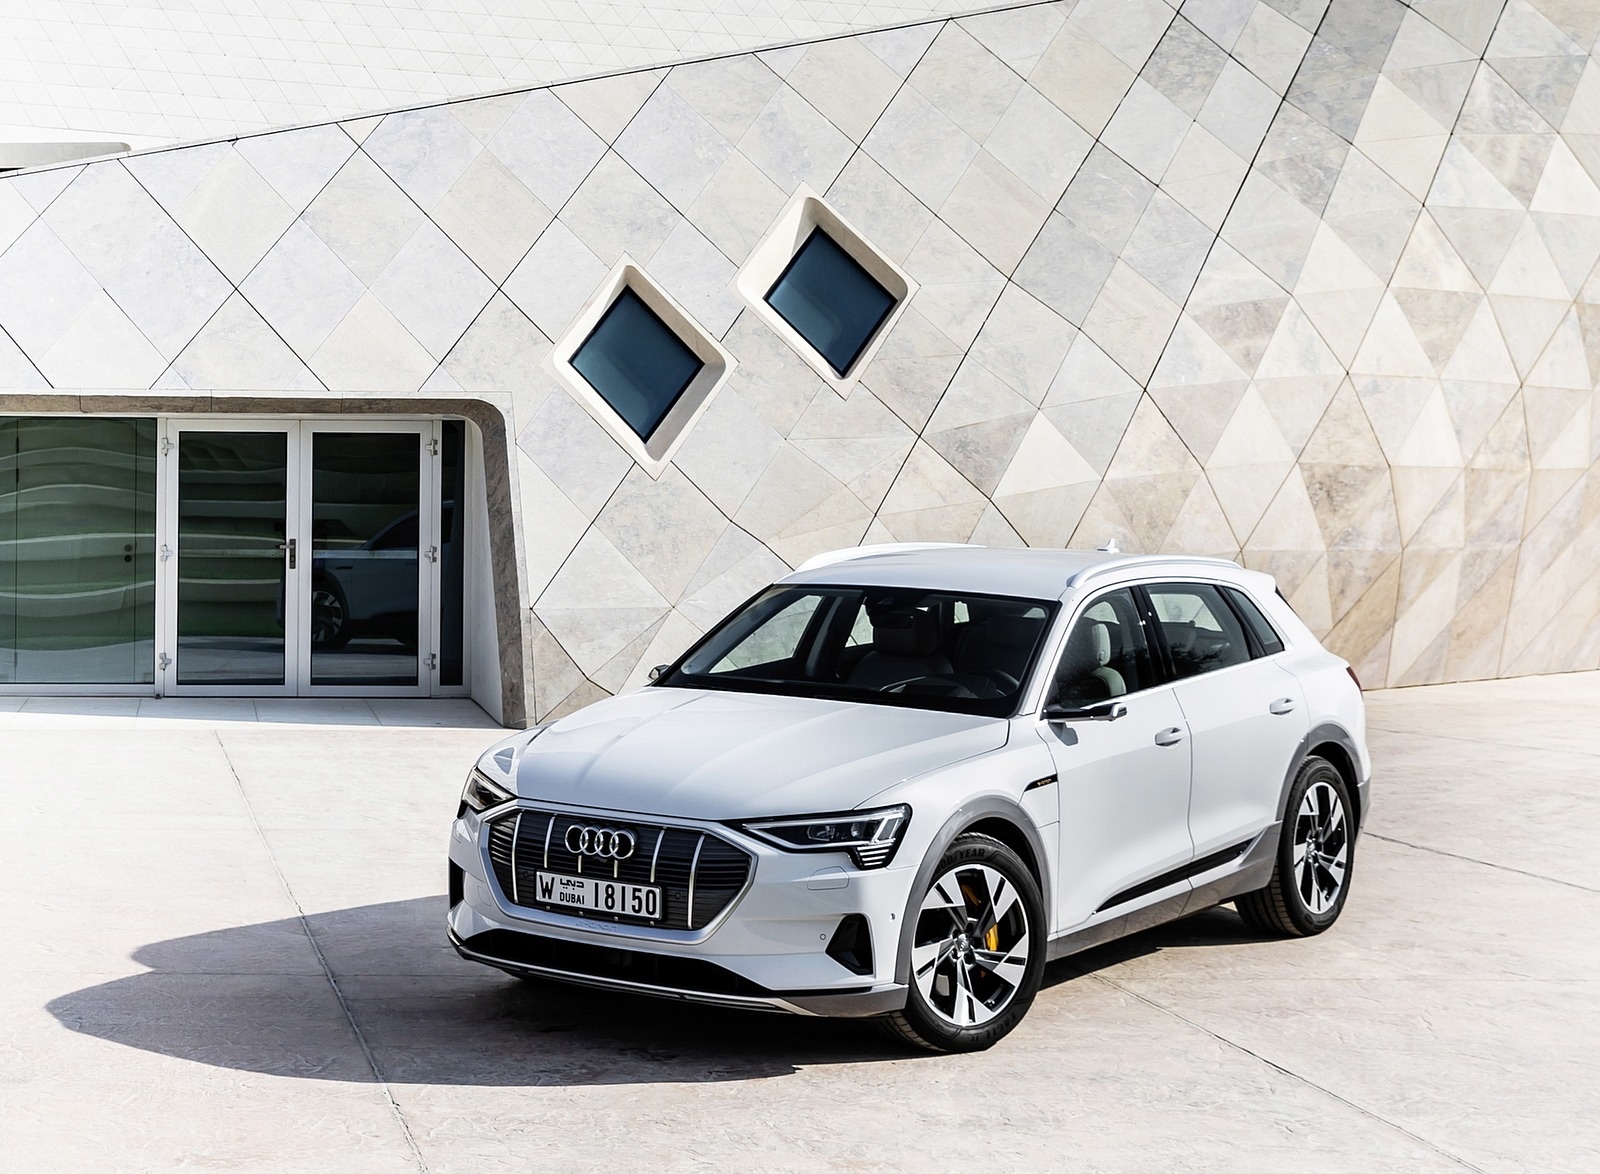 2019 Audi e-tron (Color: Glacier White) Front Three-Quarter Wallpapers #214 of 234